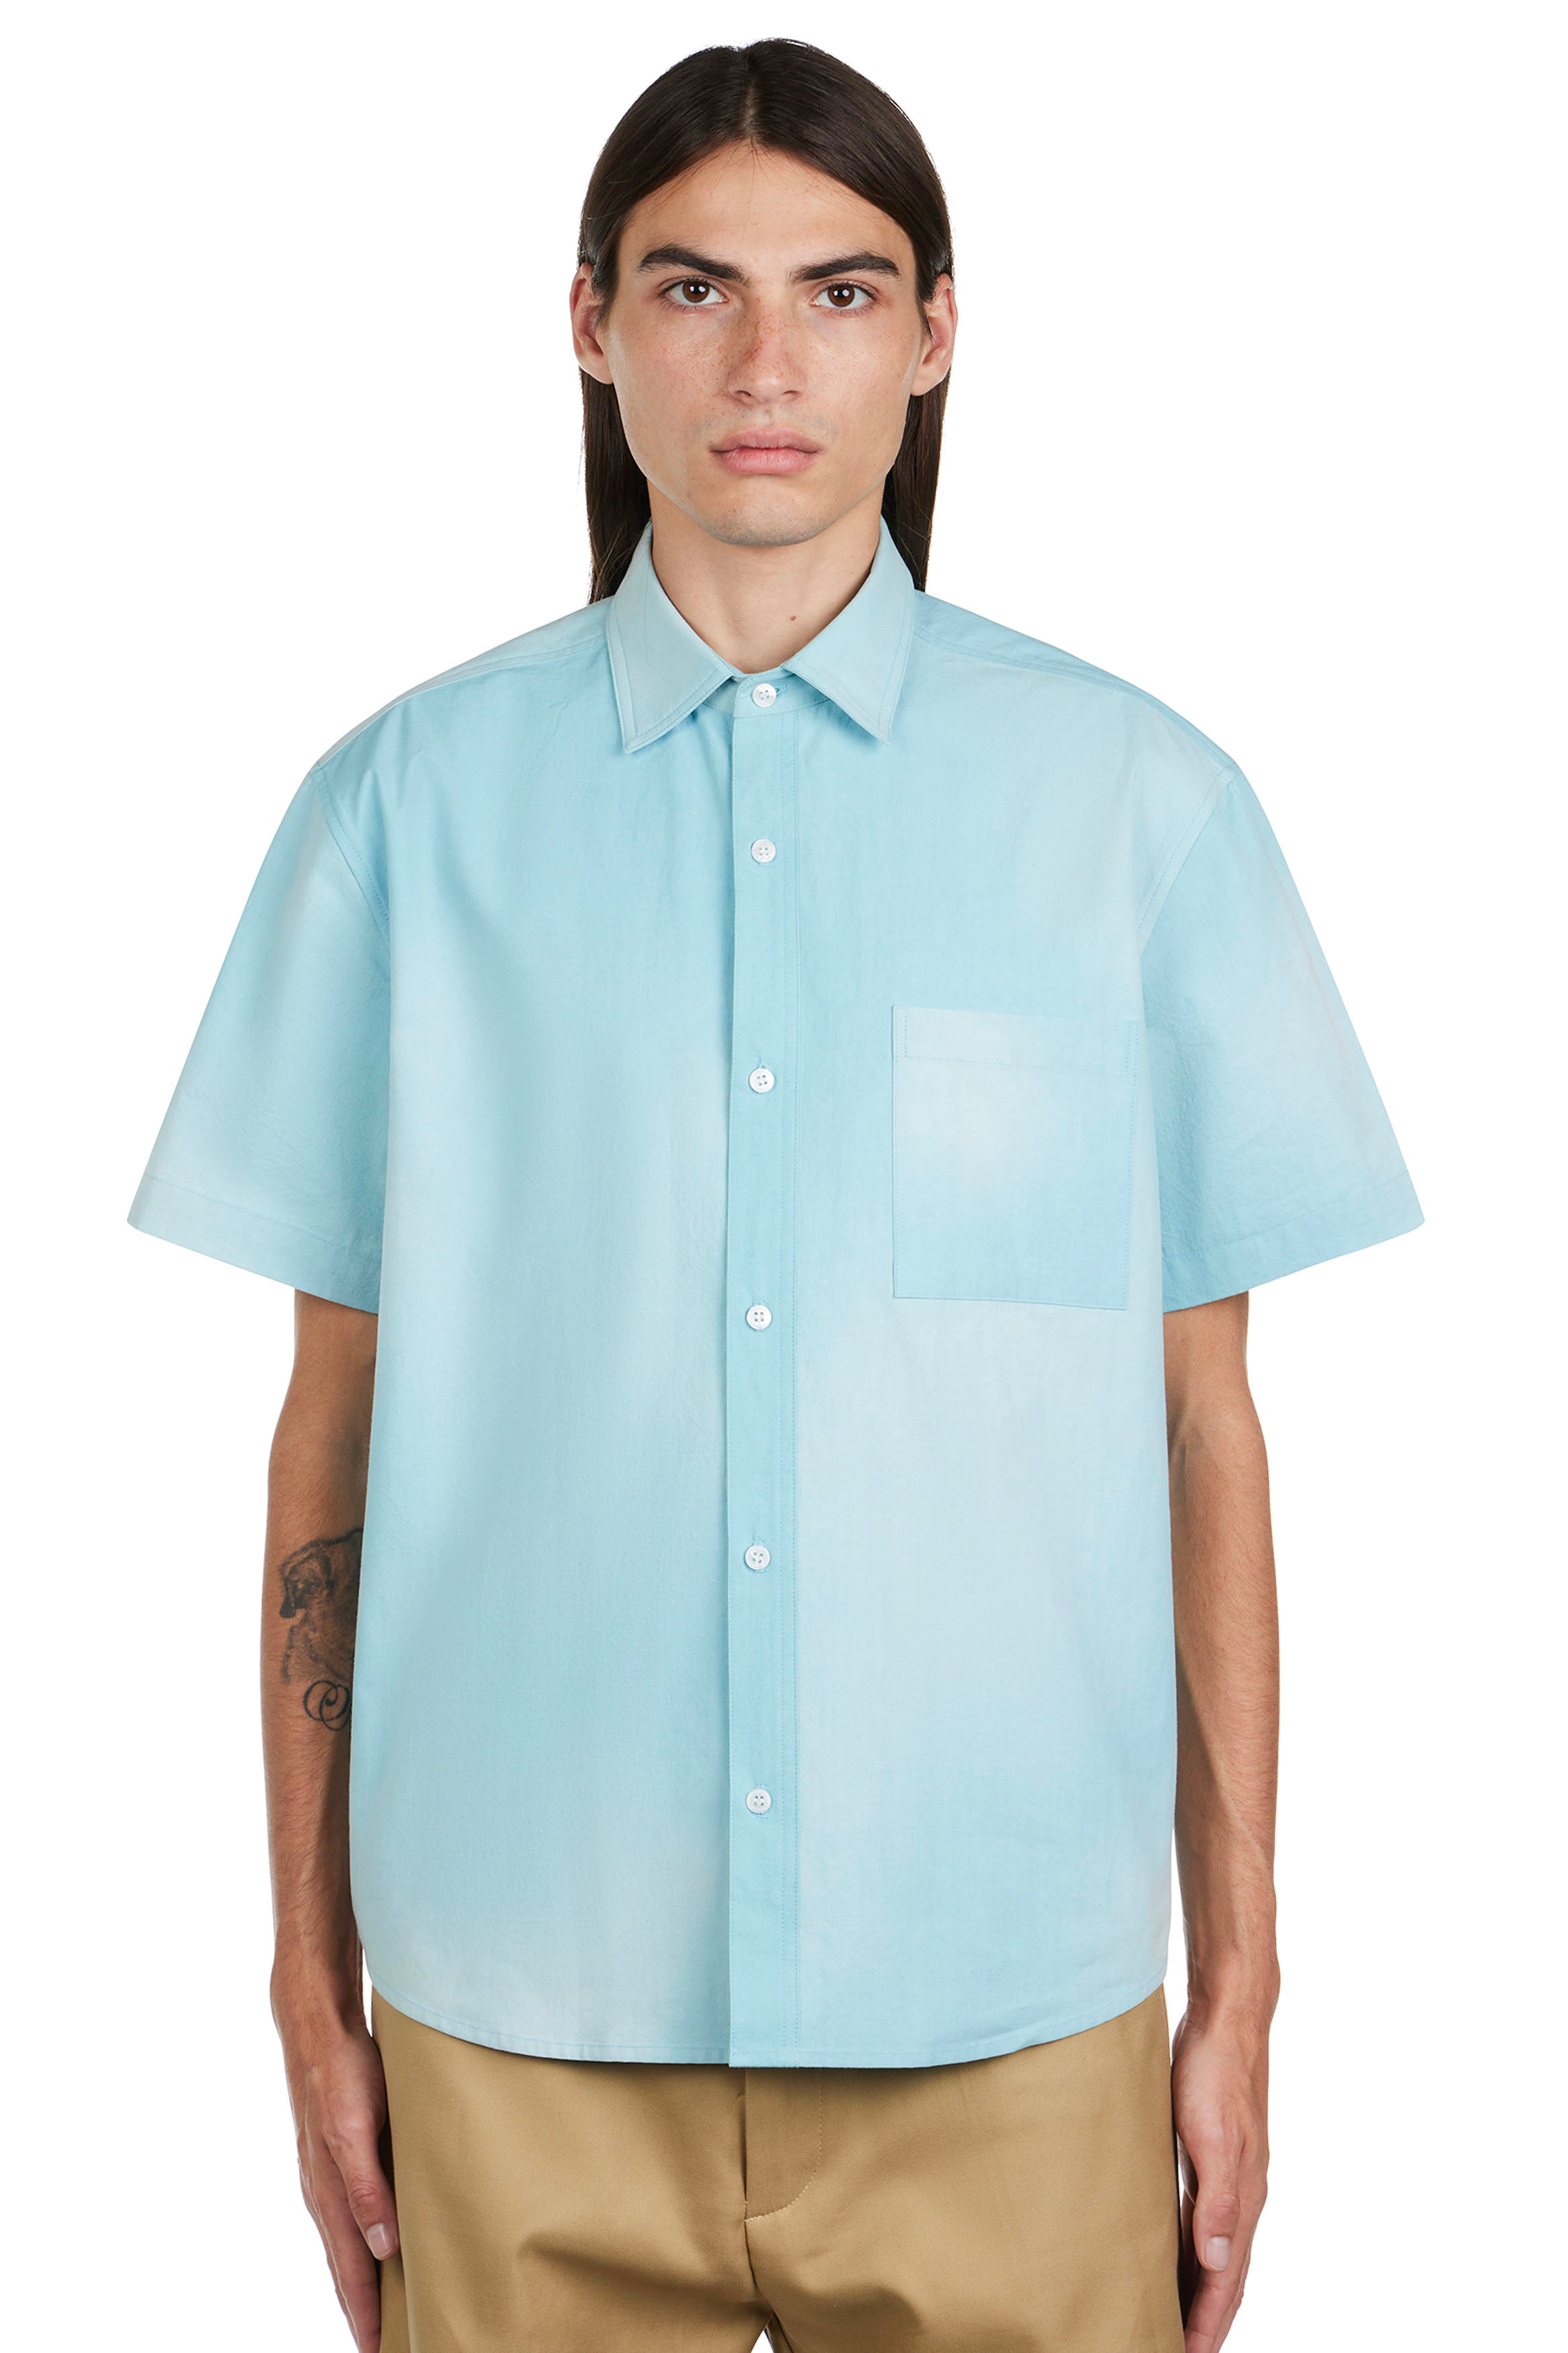 Sunfade S/S Button Up Shirt